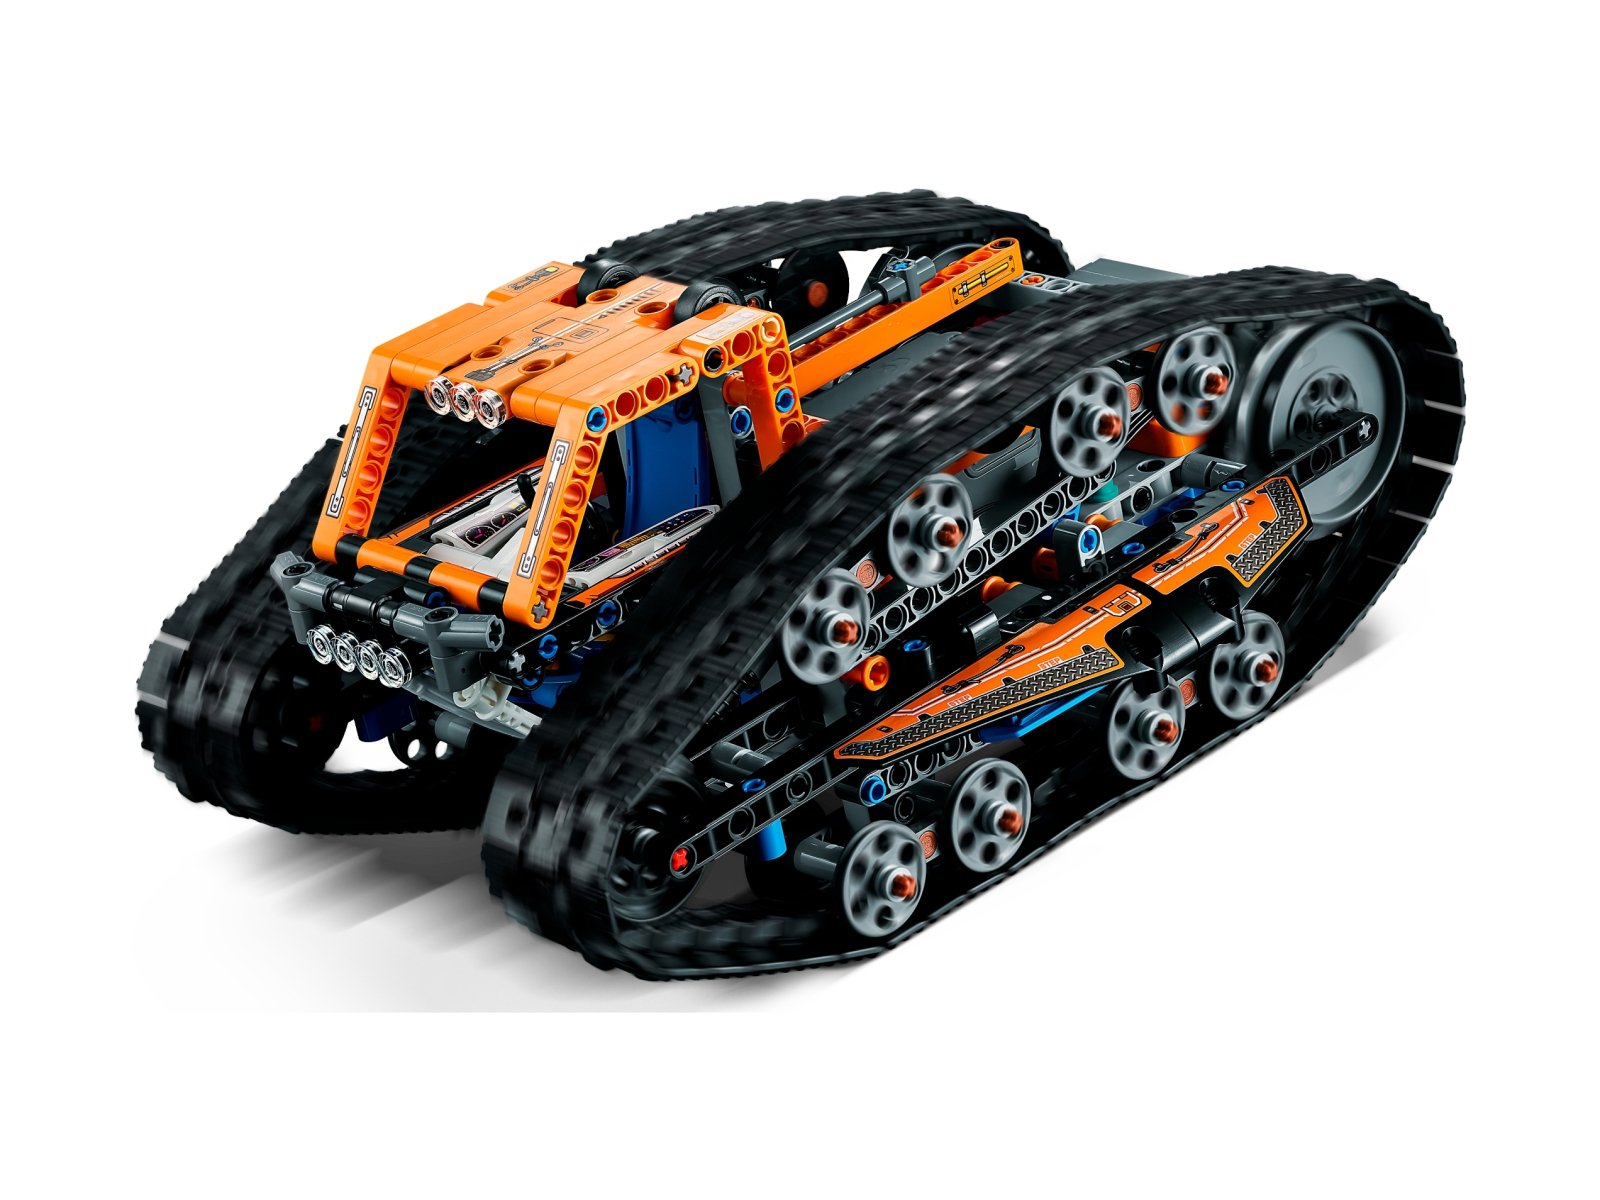 LEGO 42140 Zmiennokształtny pojazd sterowany przez aplikację